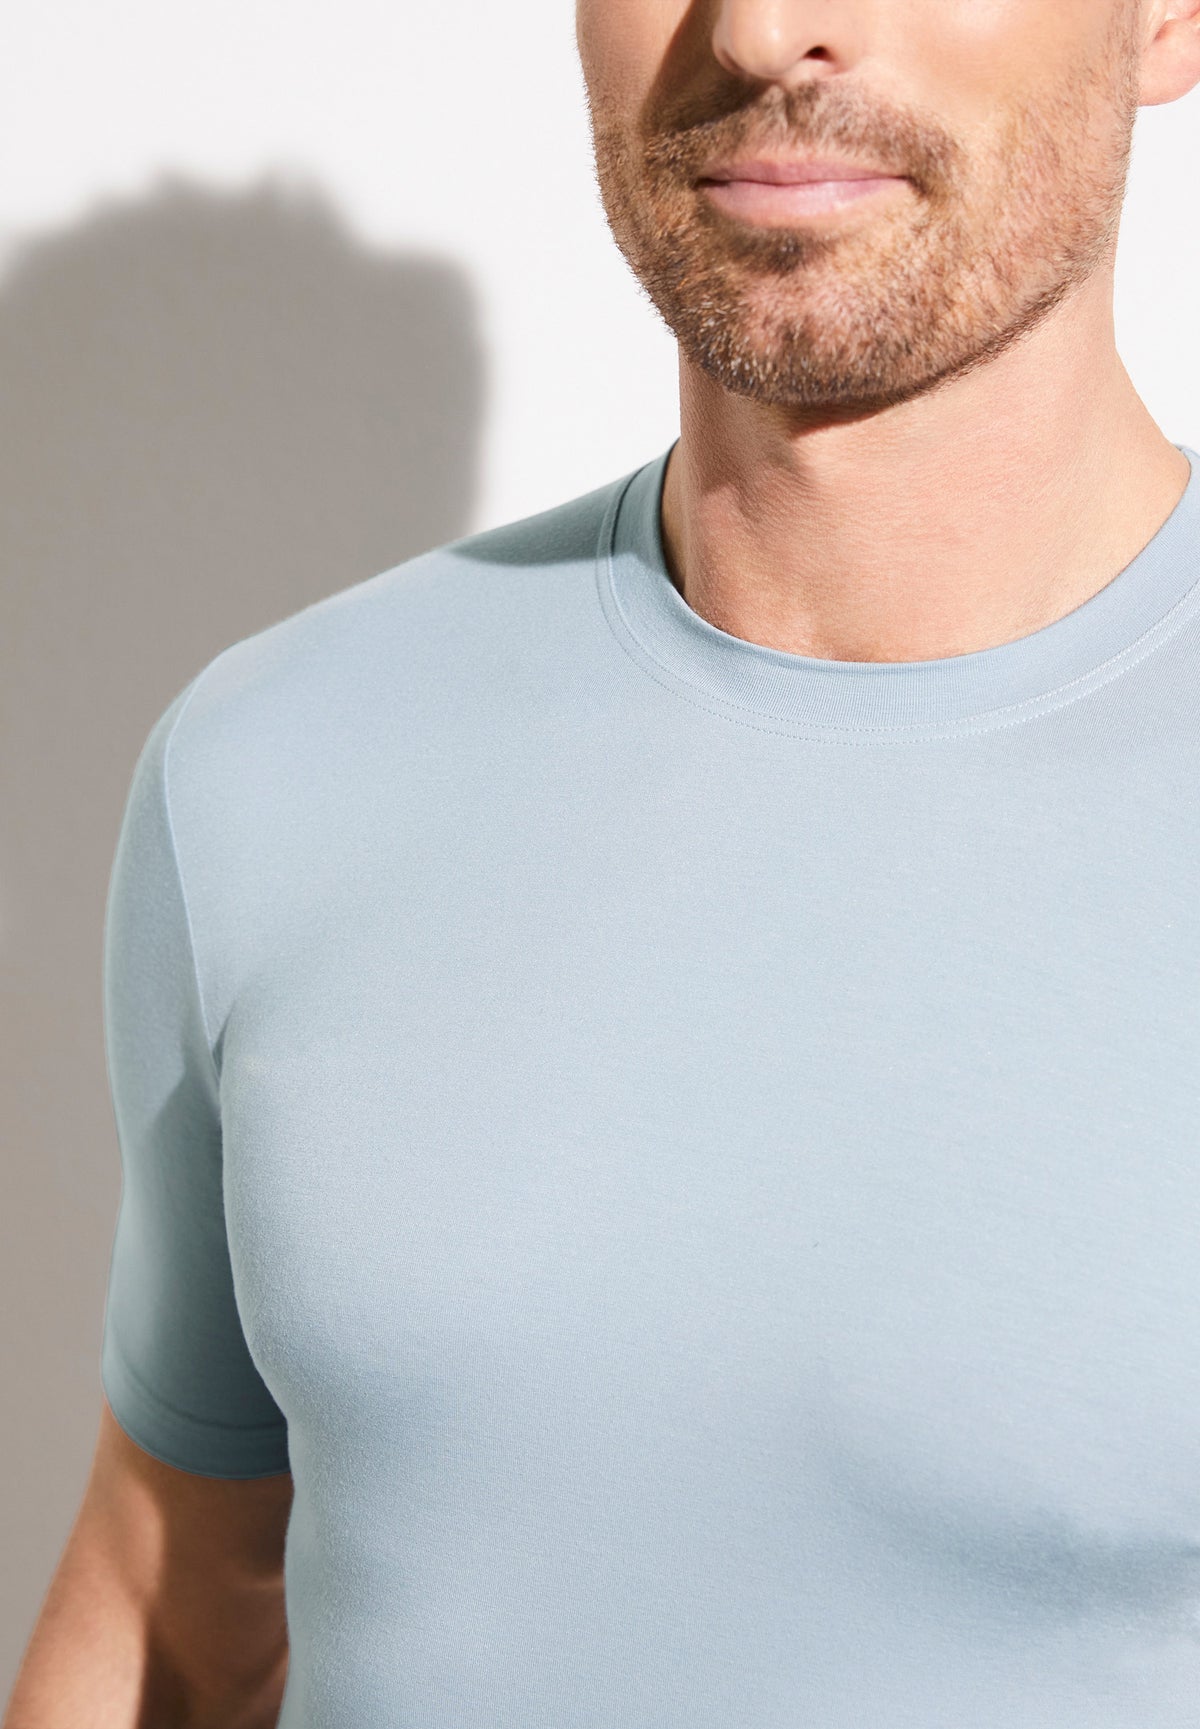 Pureness | T-Shirt Short Sleeve - sky blue